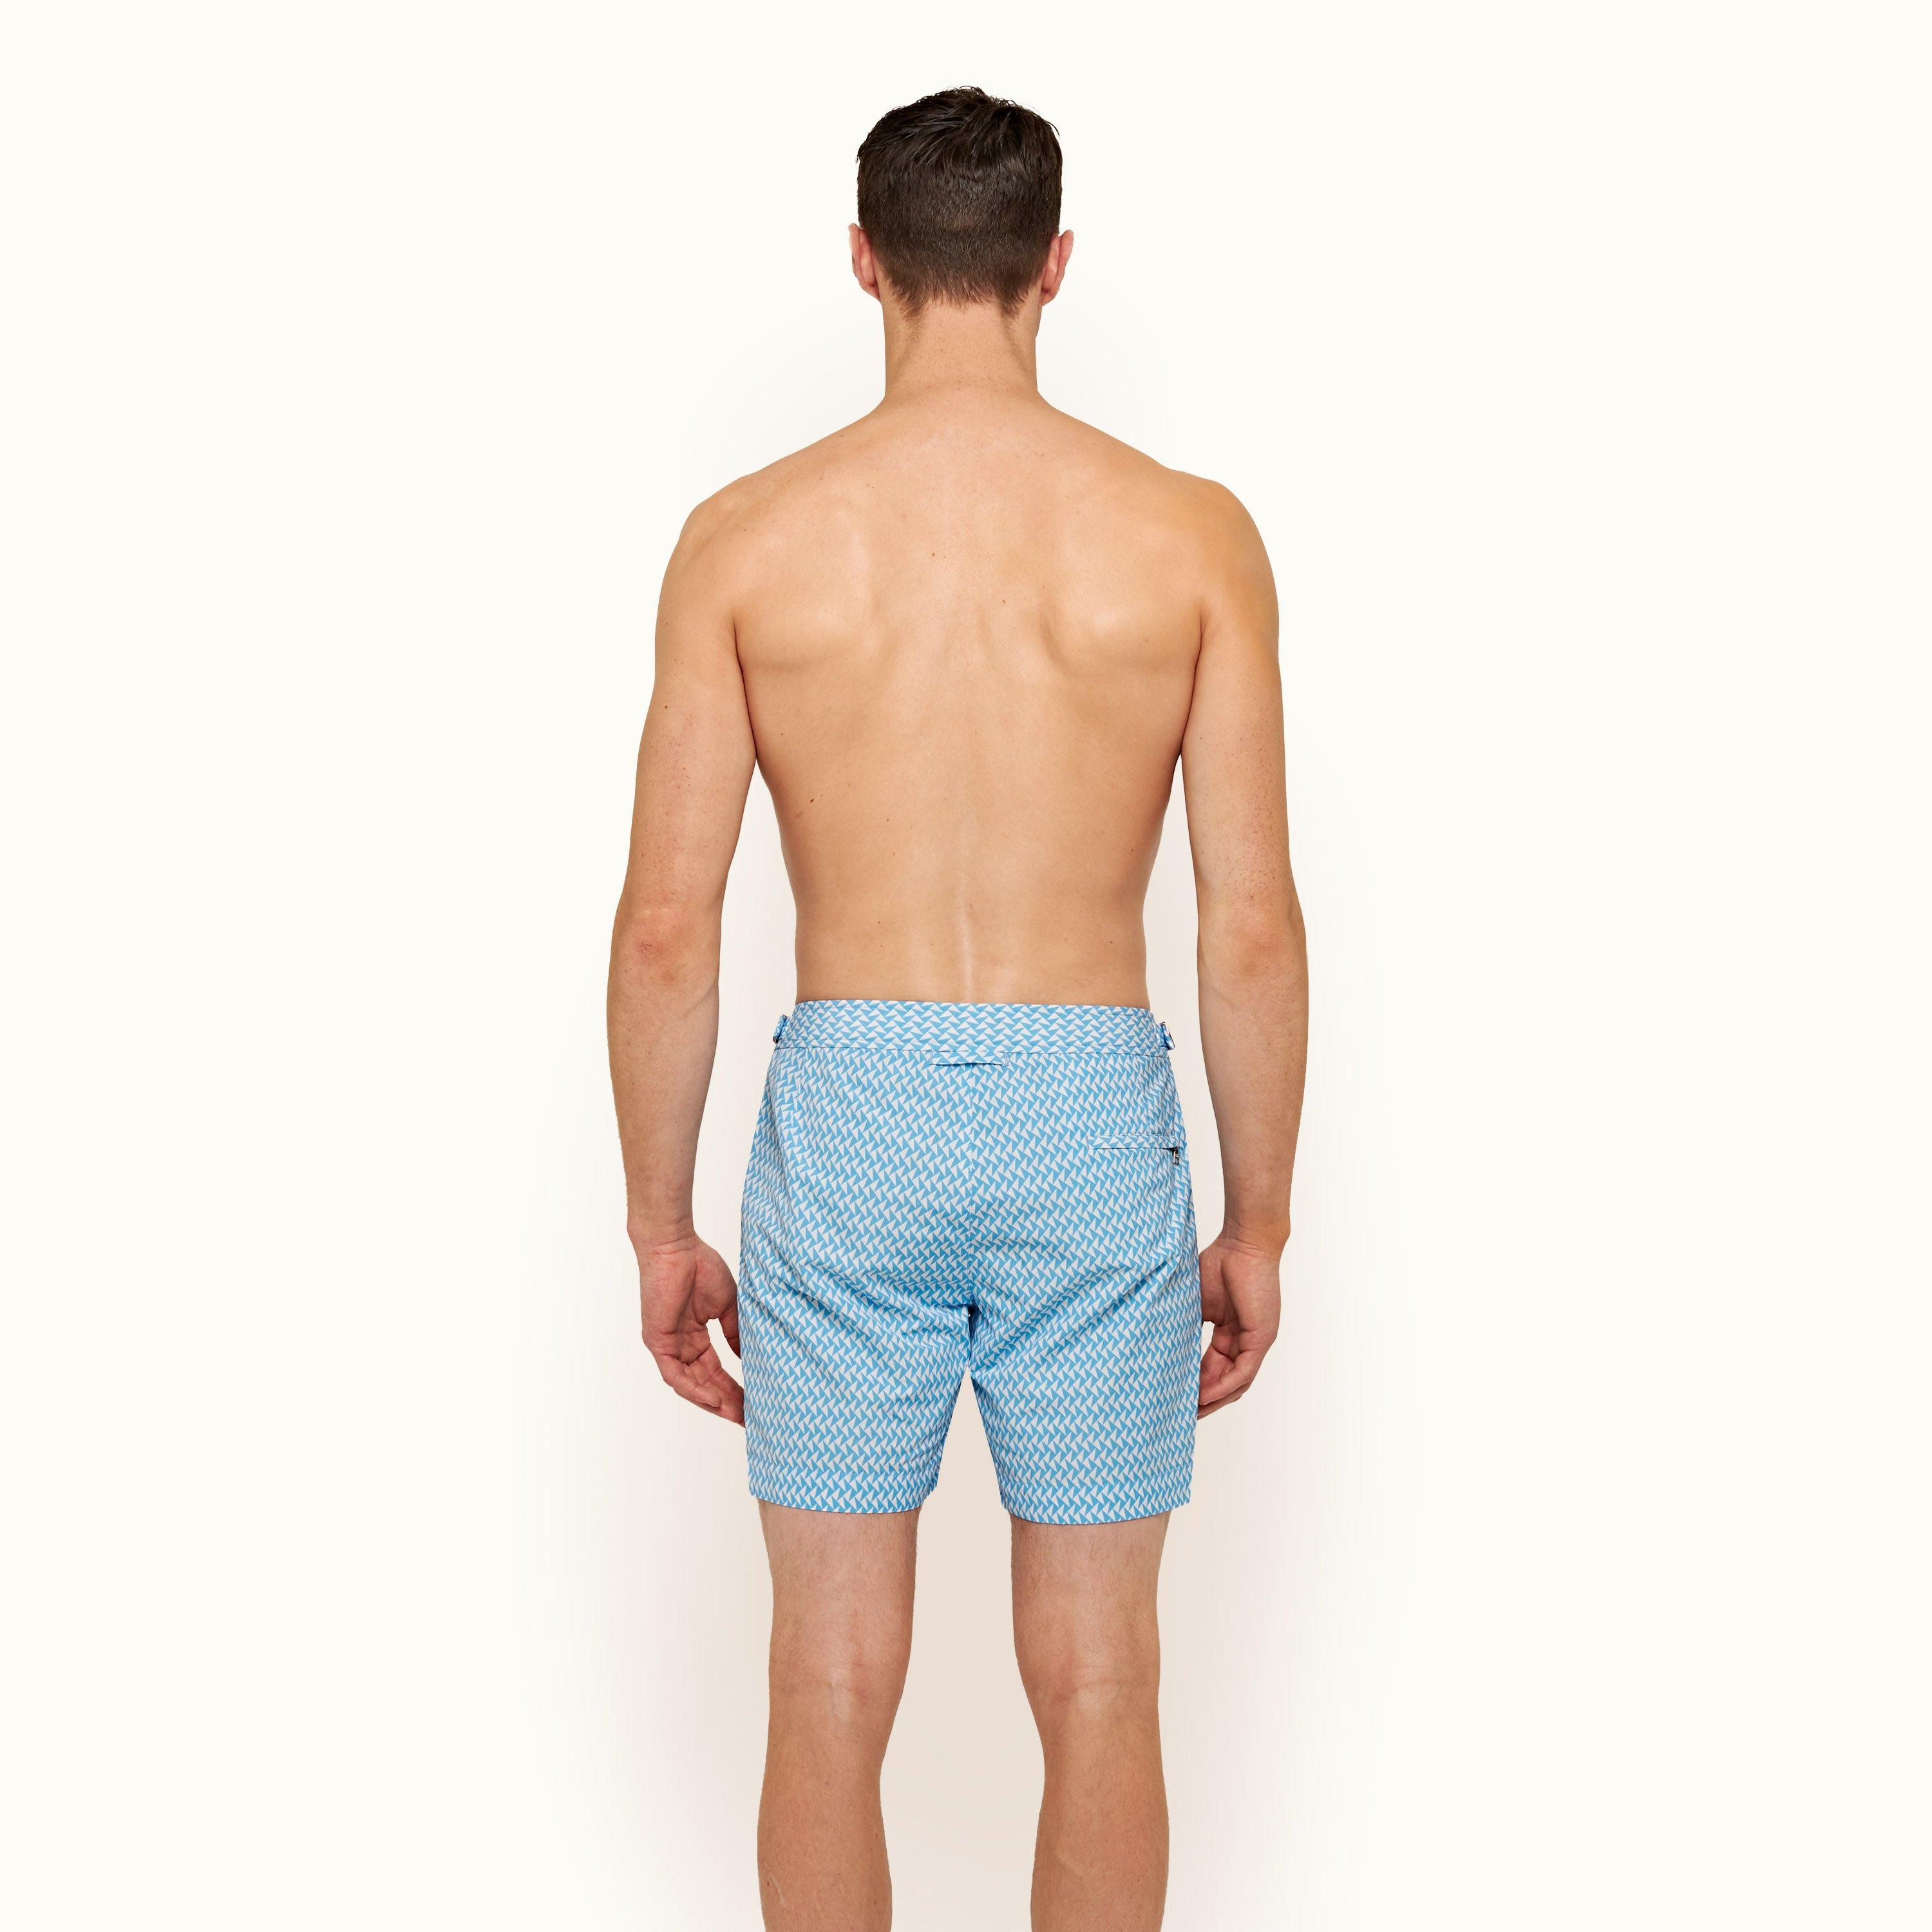 Horizon-t Beach Shorts Clover Mens Fashion Quick Dry Beach Shorts Cool Casual Beach Shorts 